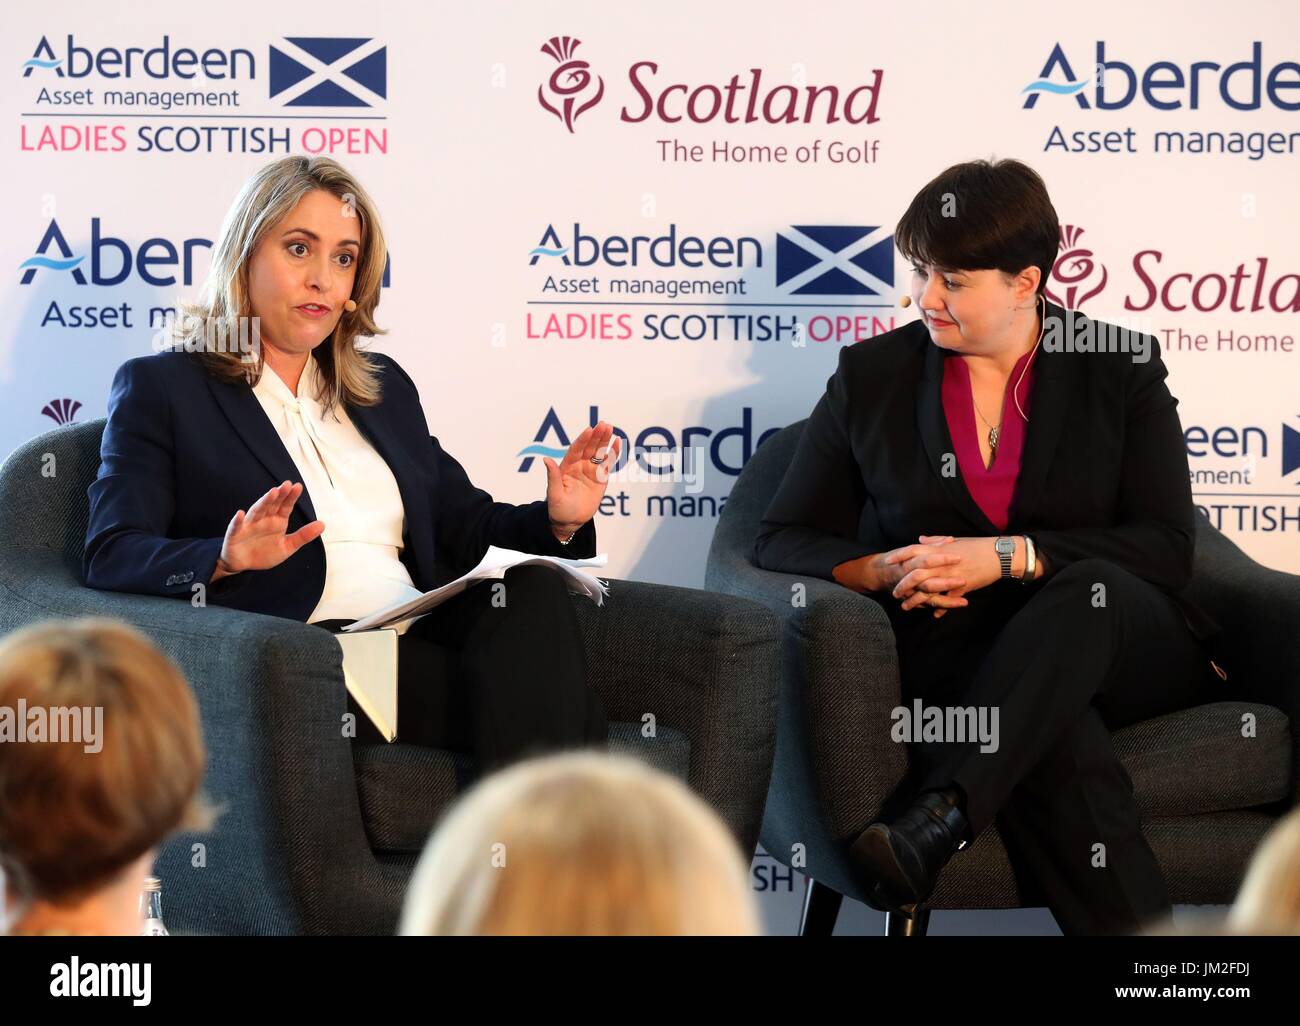 Ruth Davidson, dirigeante du parti conservateur écossais, avec Sarah Smith, rédactrice en chef de la BBC en Écosse, lors d'une séance de questions-RÉPONSES à l'événement du forum de leadership d'Aberdeen Asset Management « mettre le genre à l'ordre du jour : les idées du haut » avant le Ladies Scottish Open qui se tient à Dundonald Links, dans le comté d'Ayrshire. Banque D'Images